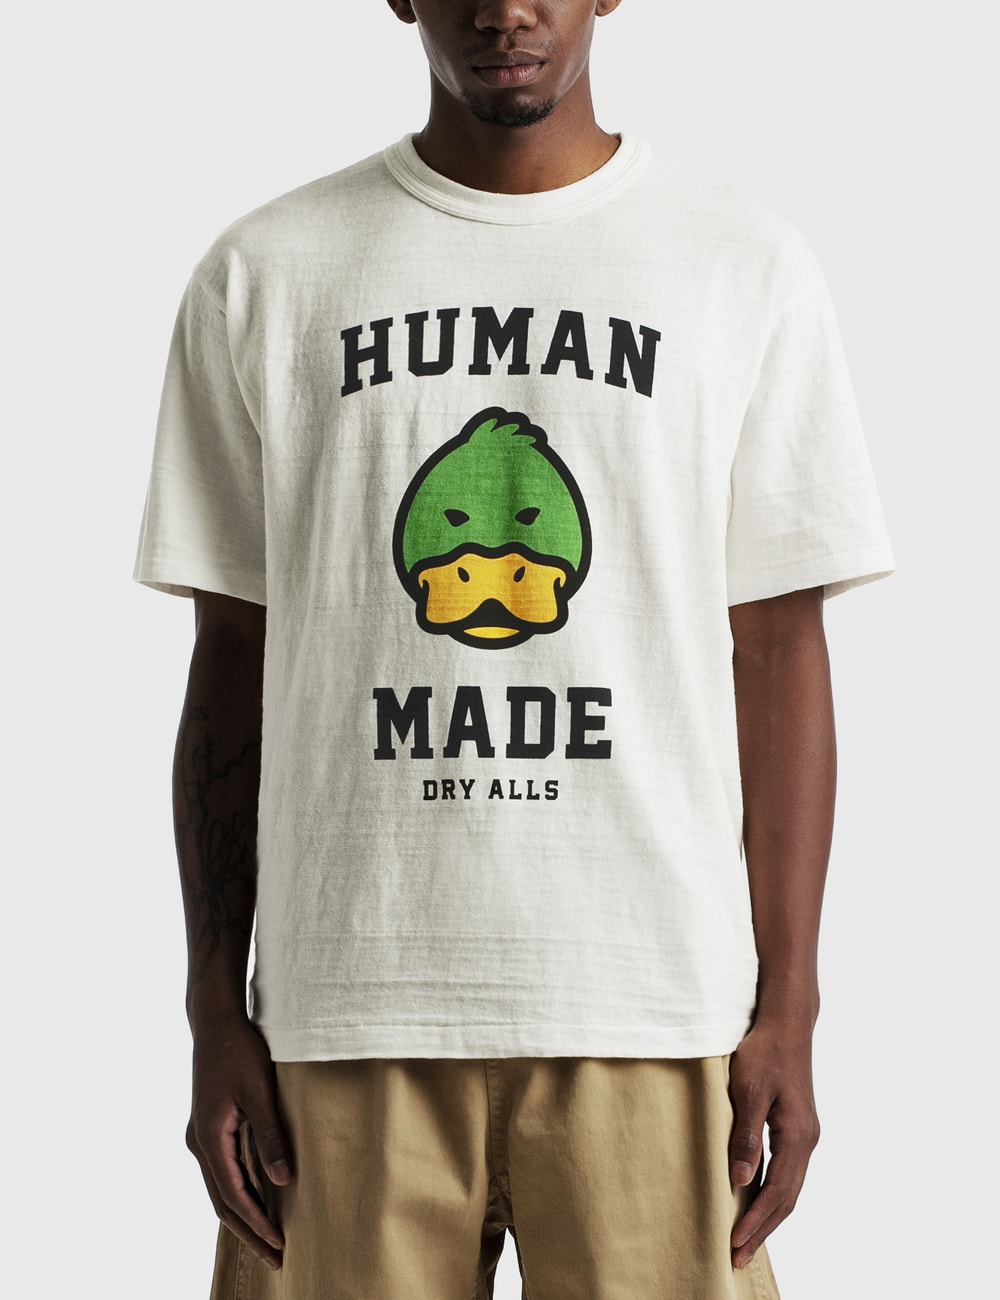 Human Made - T-shirt #2108 | HBX